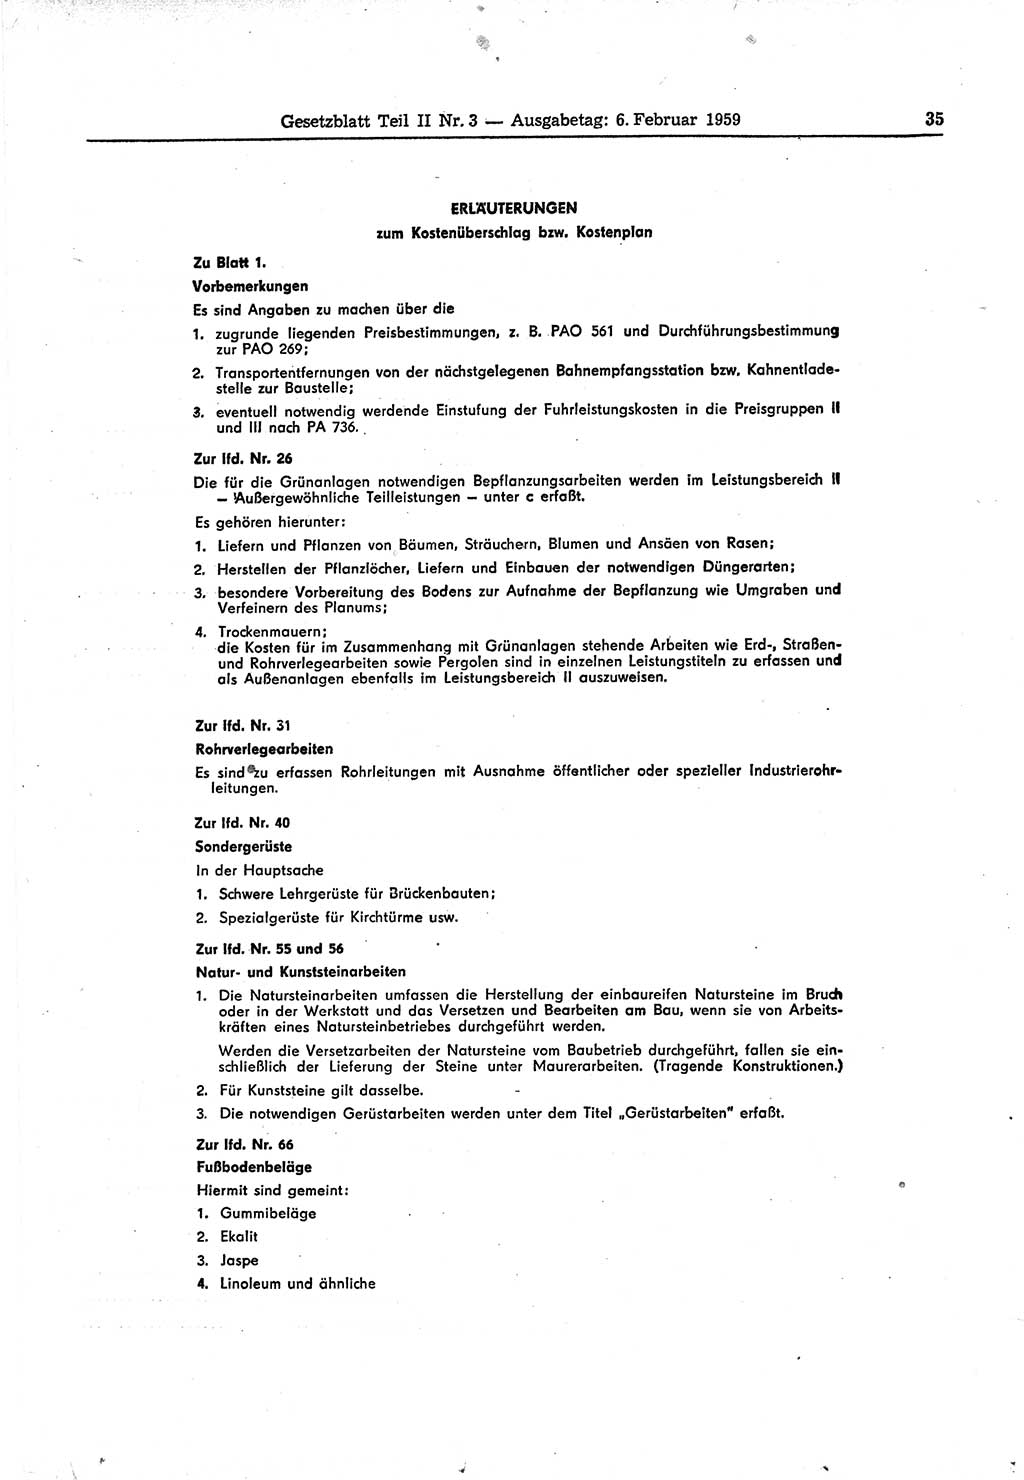 Gesetzblatt (GBl.) der Deutschen Demokratischen Republik (DDR) Teil ⅠⅠ 1959, Seite 35 (GBl. DDR ⅠⅠ 1959, S. 35)